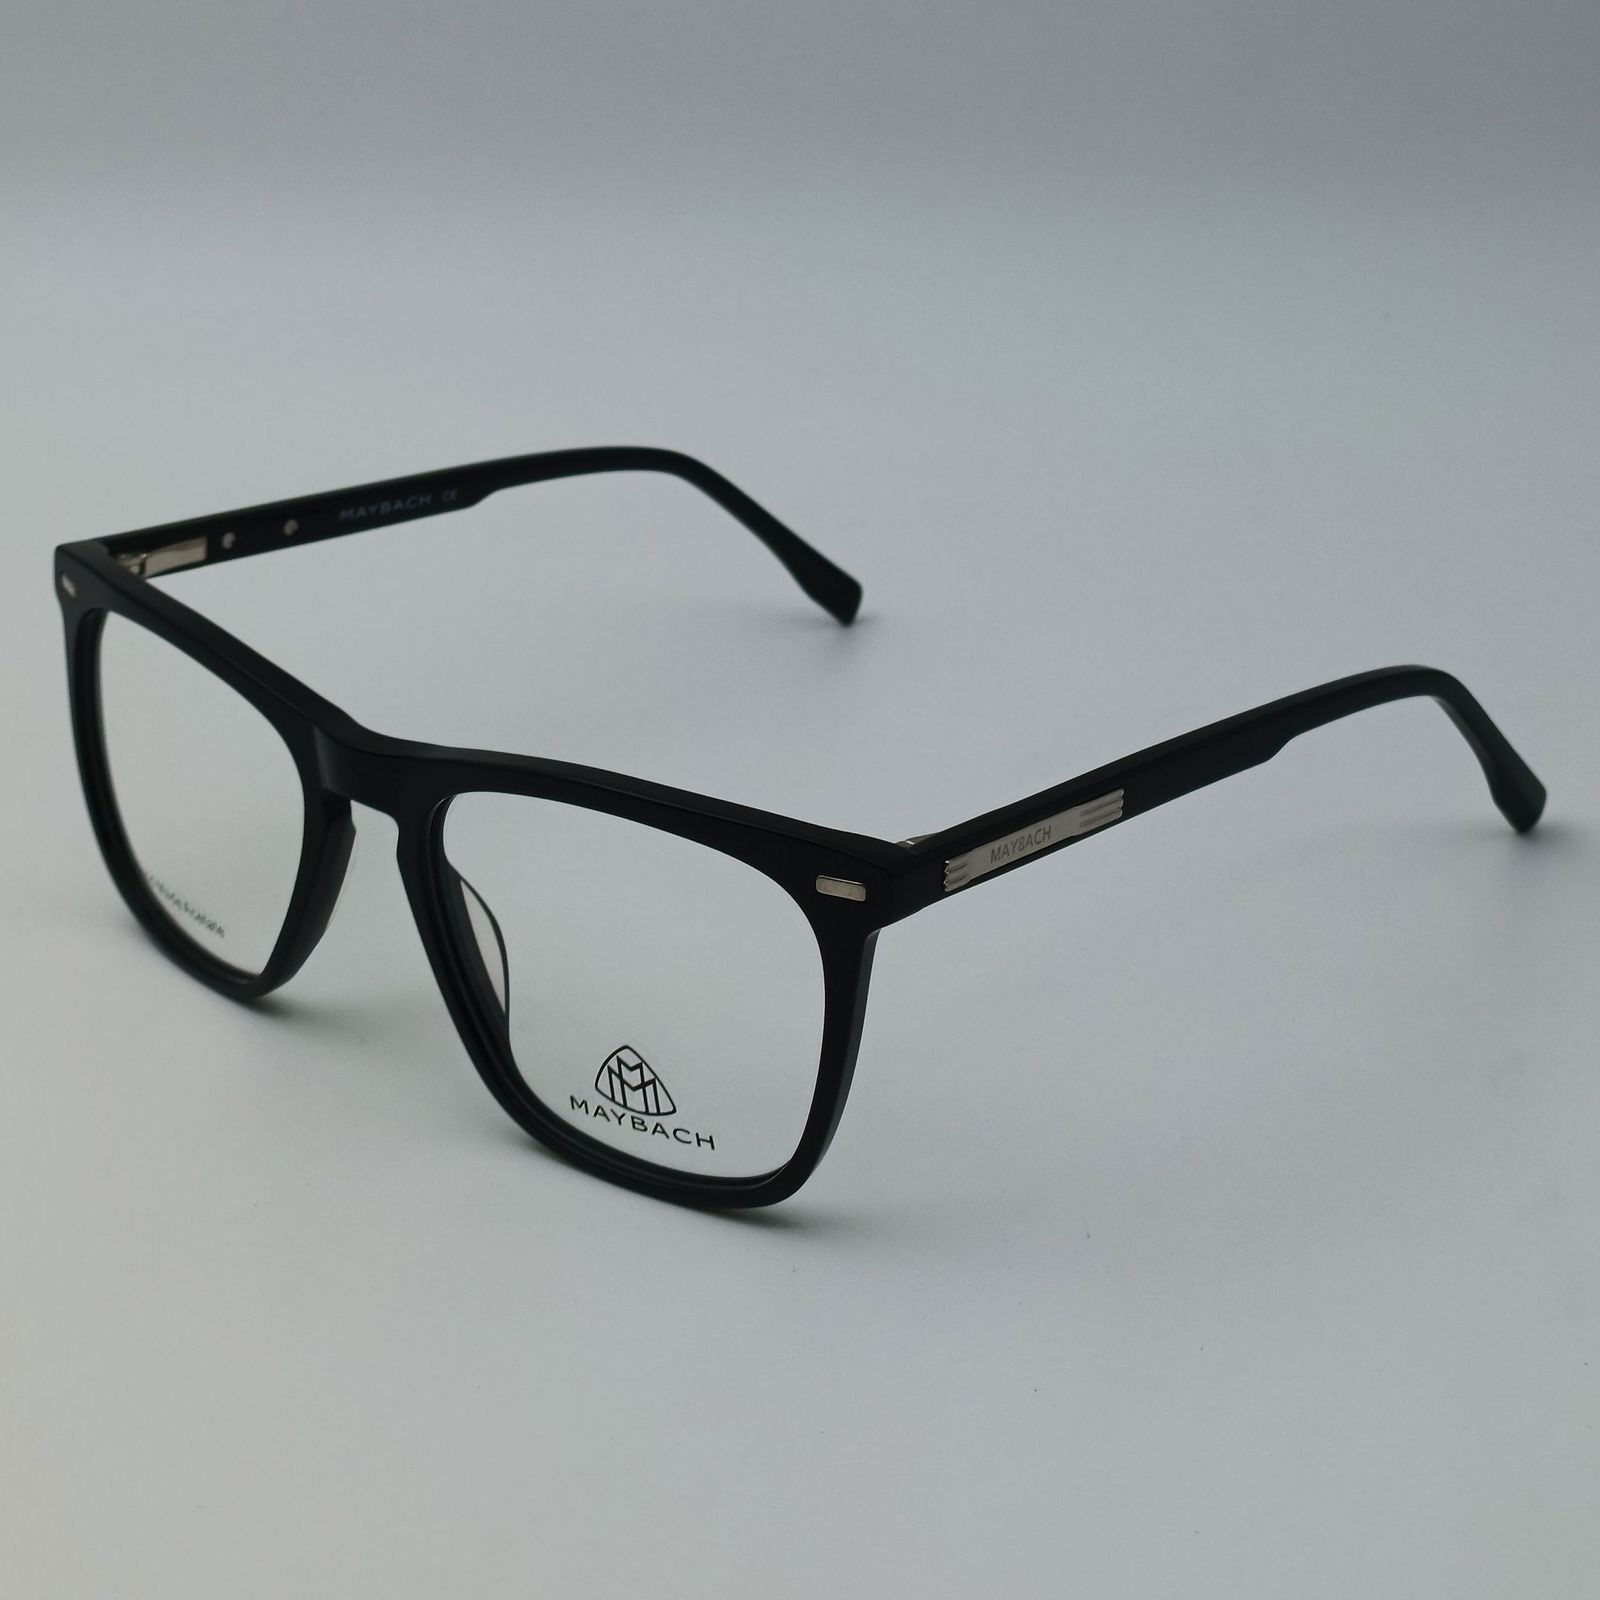 فریم عینک طبی میباخ مدل 6504 C1 -  - 3